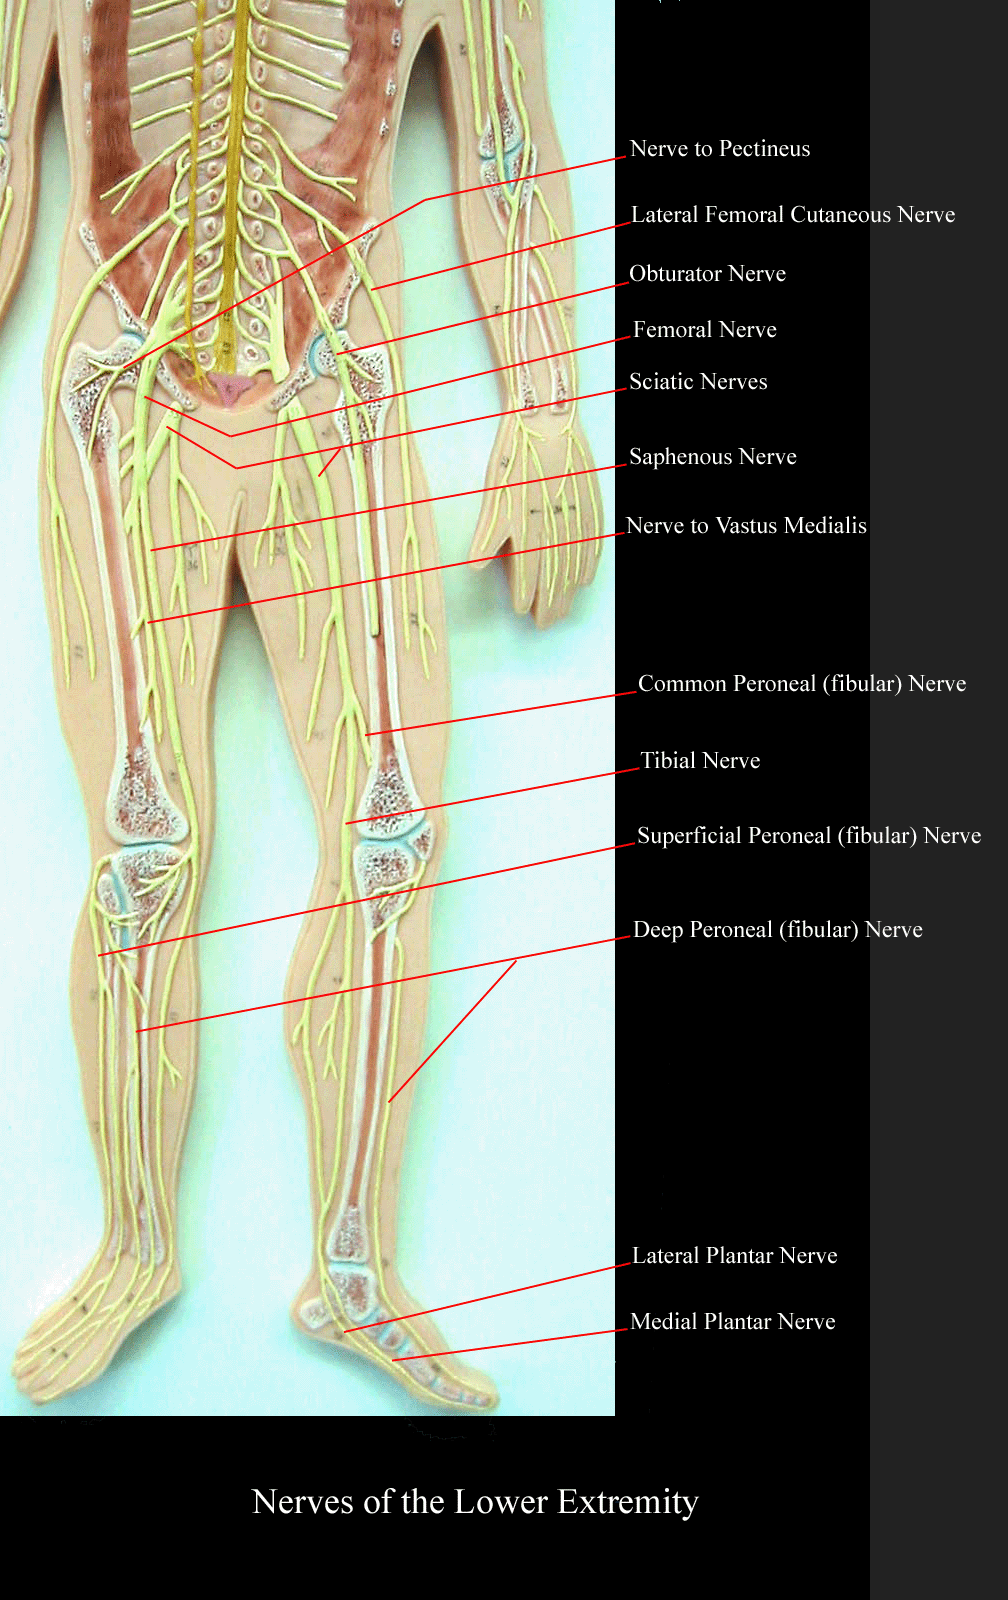 Nerves Of The Leg Labeled - slideshare